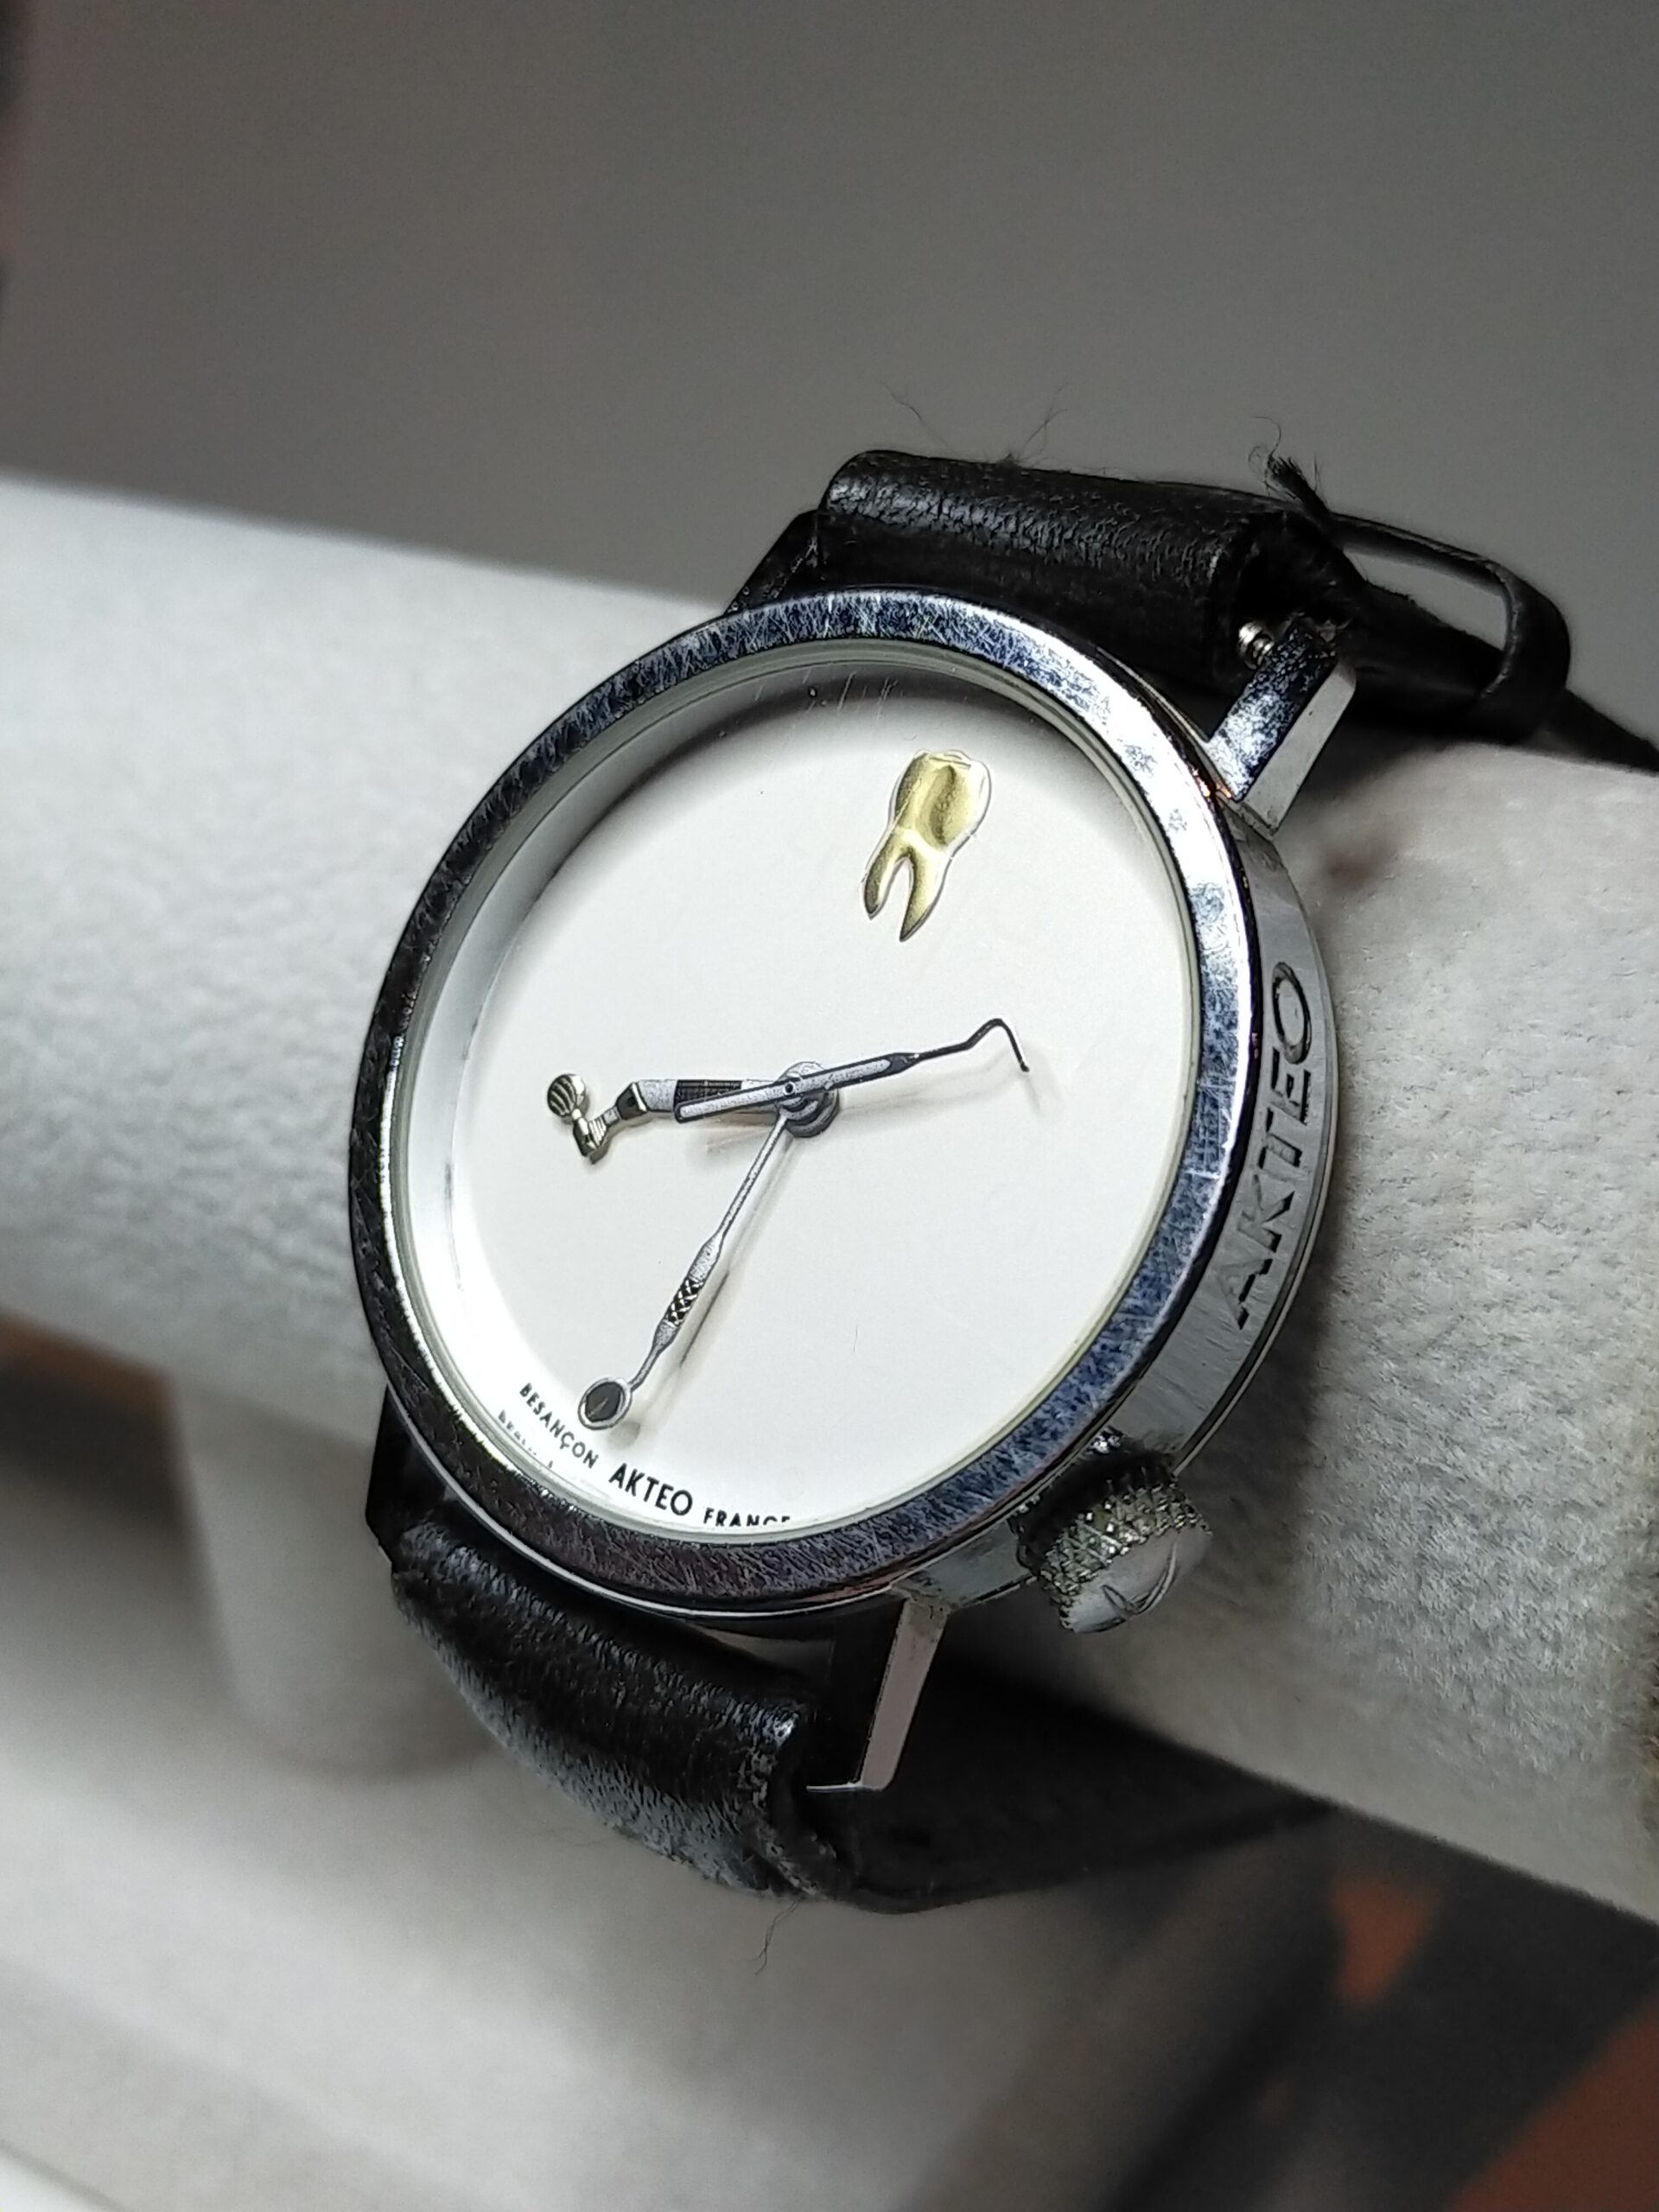 AKTEO 腕時計ファッション小物 - 腕時計